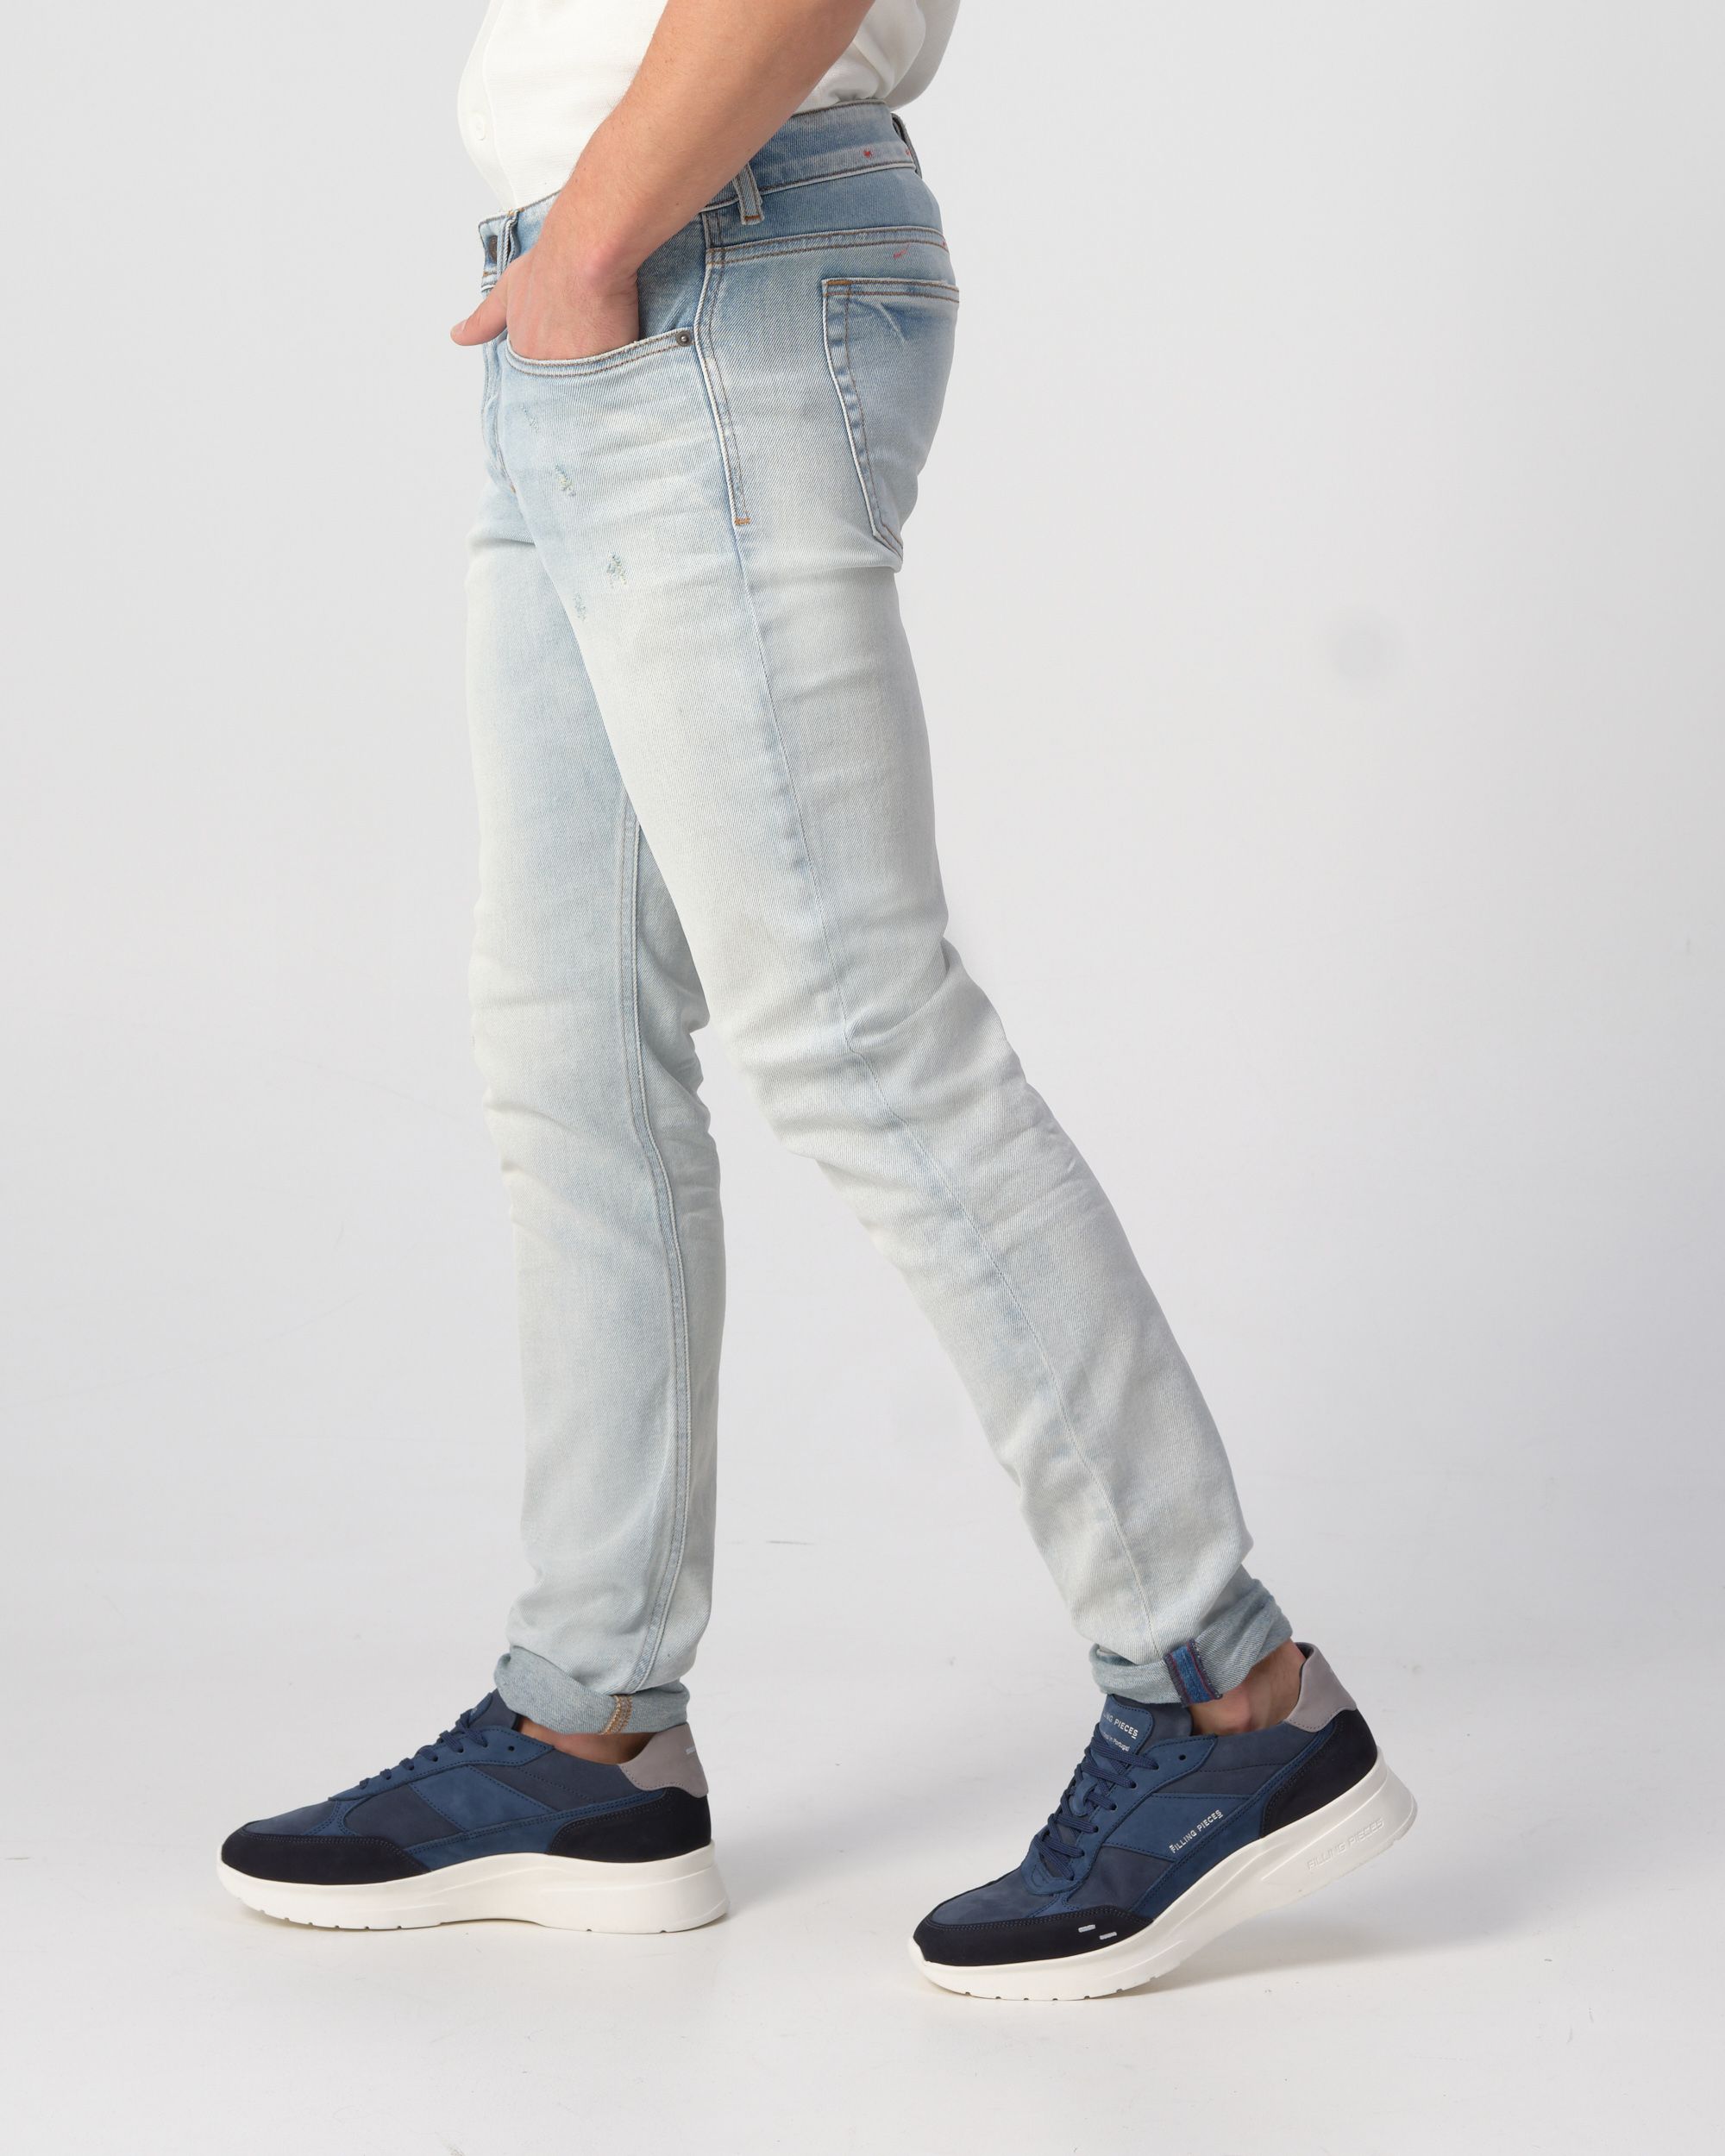 Diesel Sleenker Jeans Blauw 091601-001-29/30